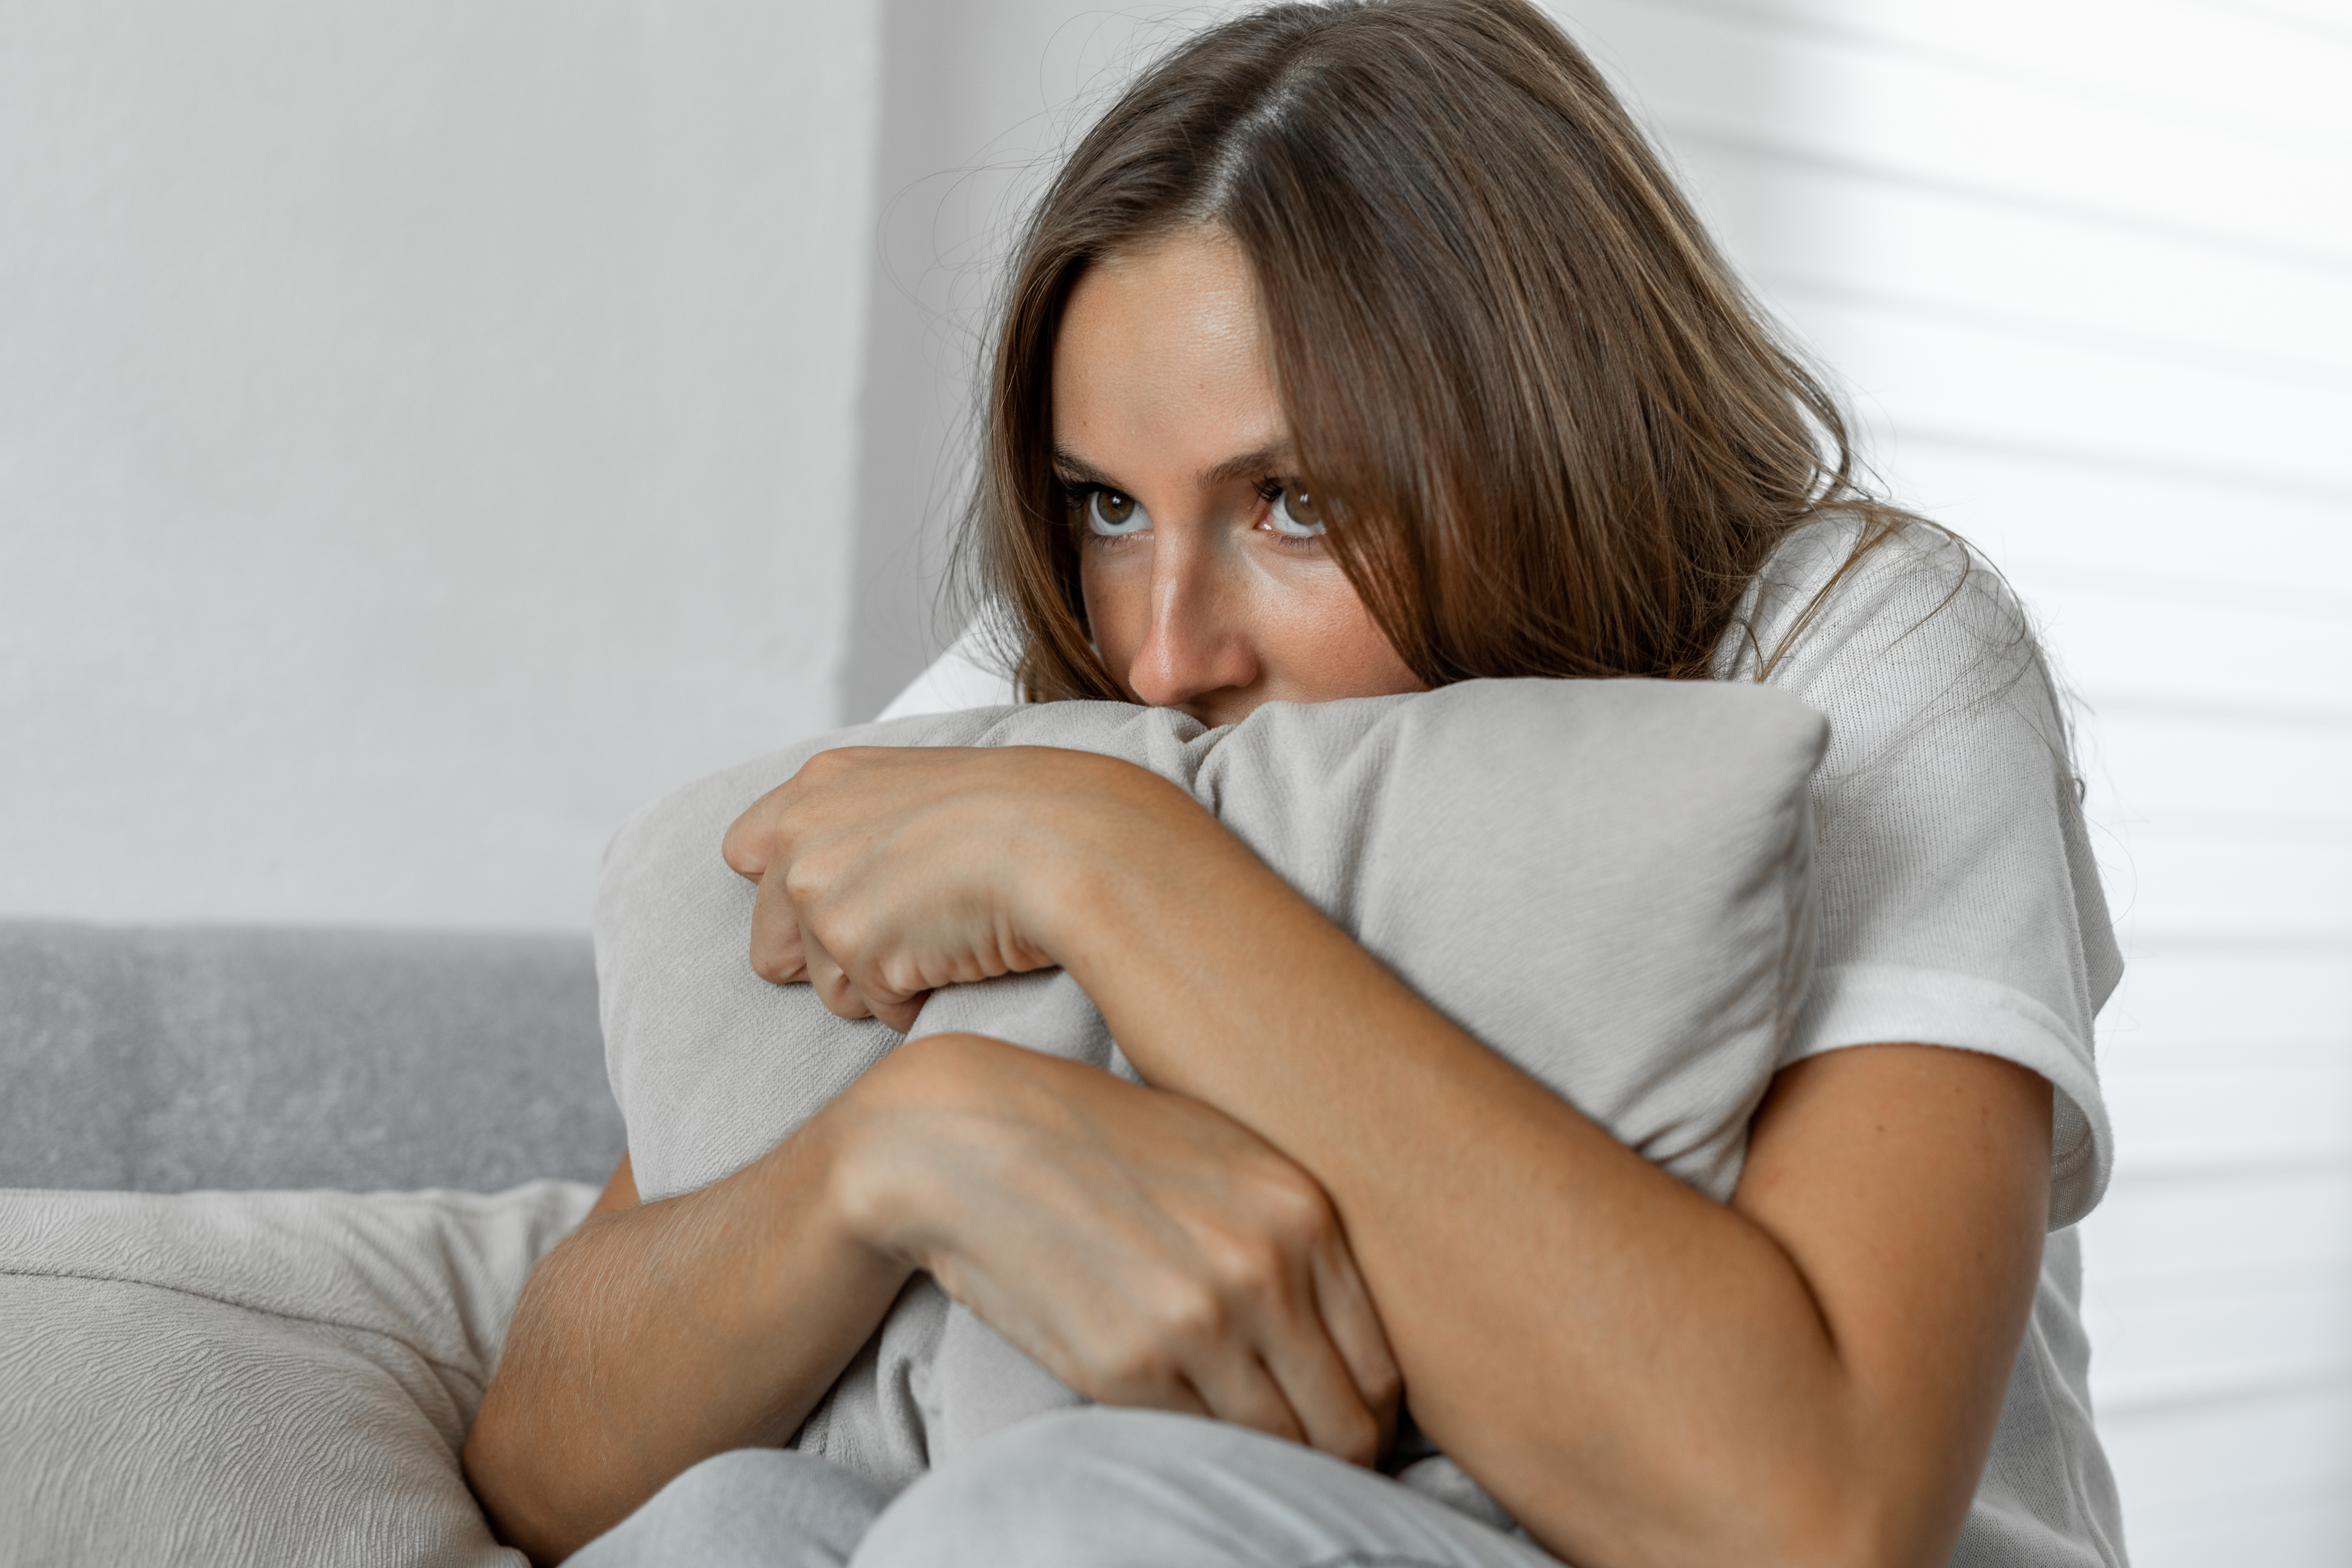 Femme effrayée à la maison embrassant un oreiller assis sur un canapé | Source : Getty Images